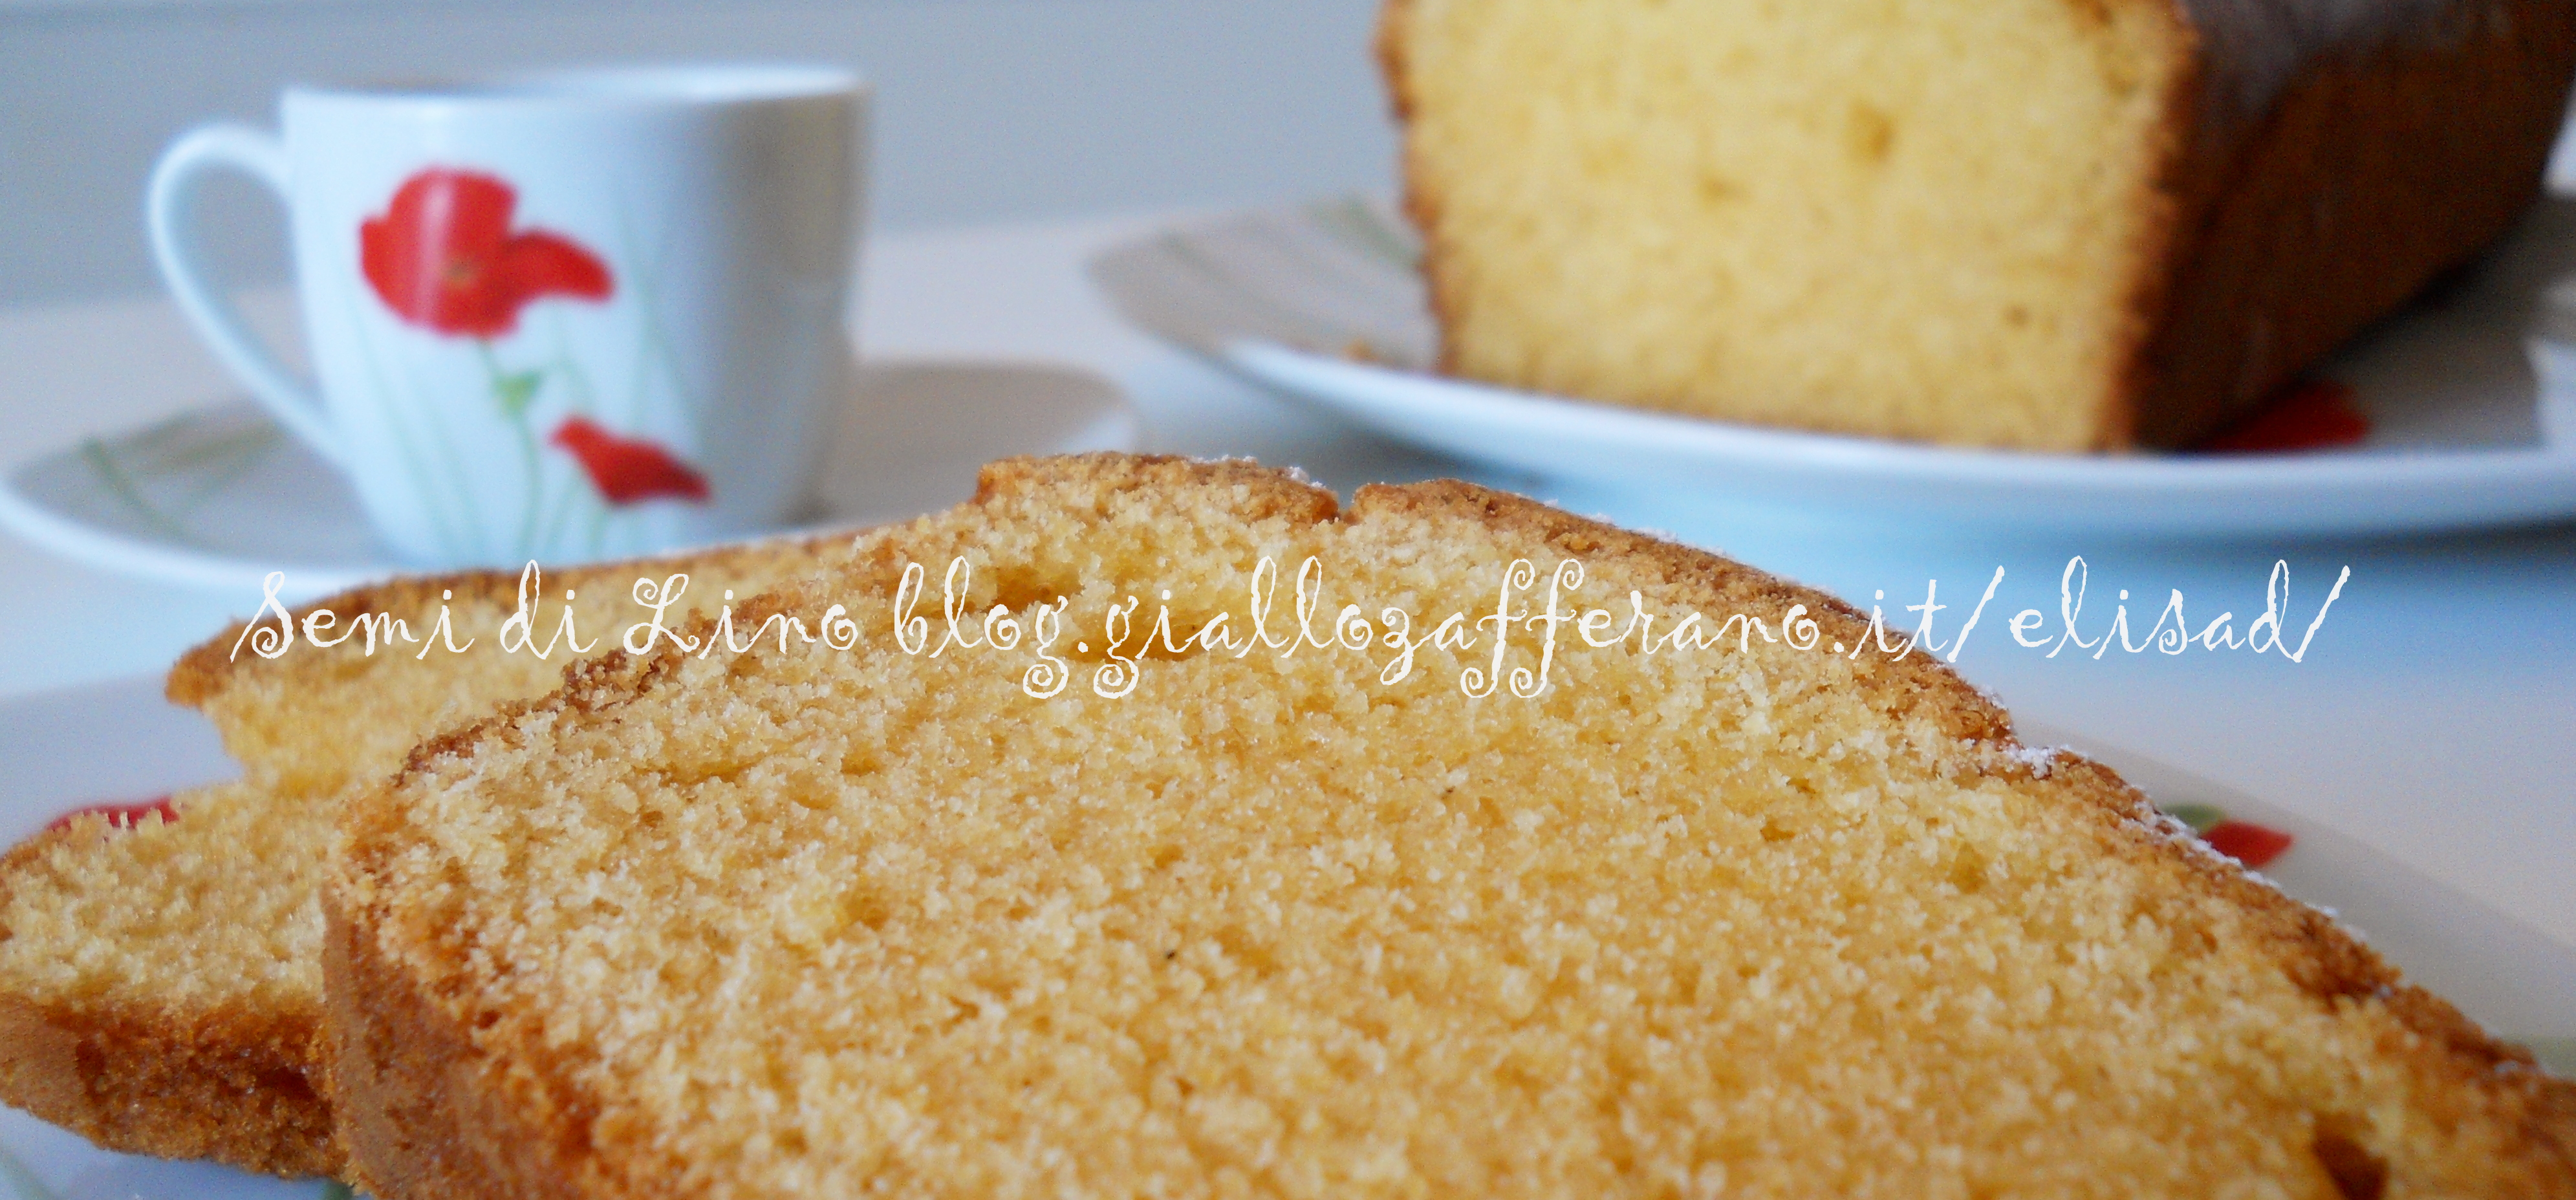 Plumcake alla farina mais fioretto - Ricetta Torta senza burro | Semi di Lino blog